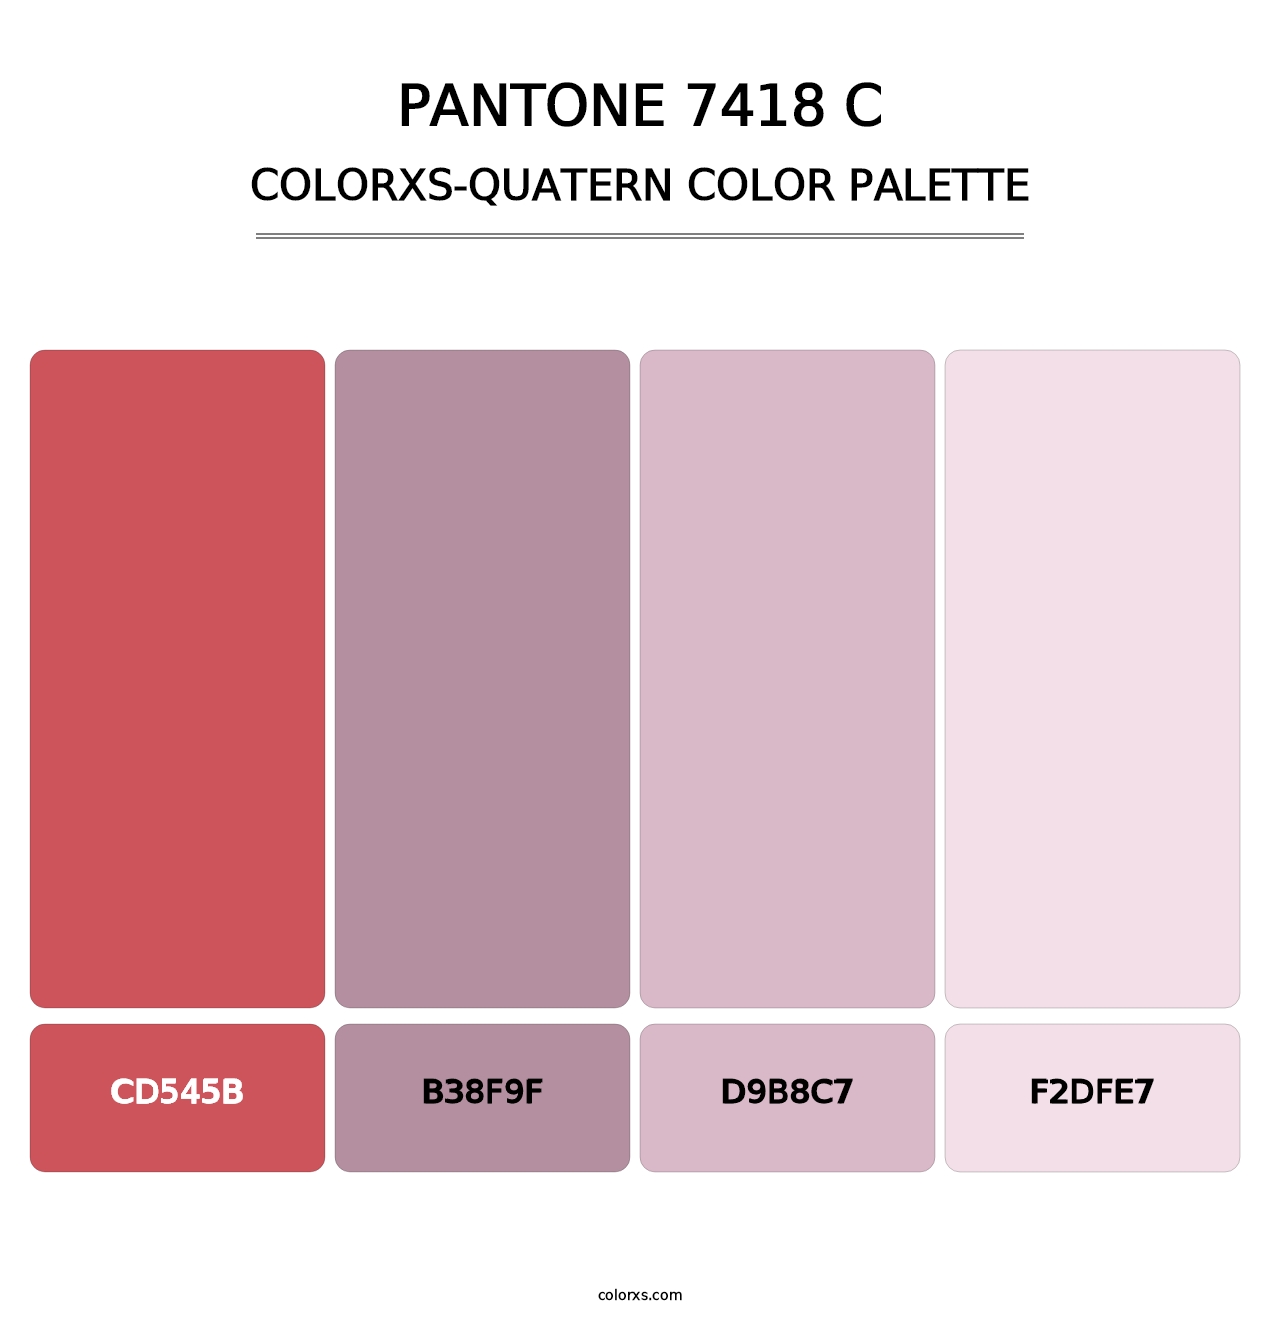 PANTONE 7418 C - Colorxs Quatern Palette